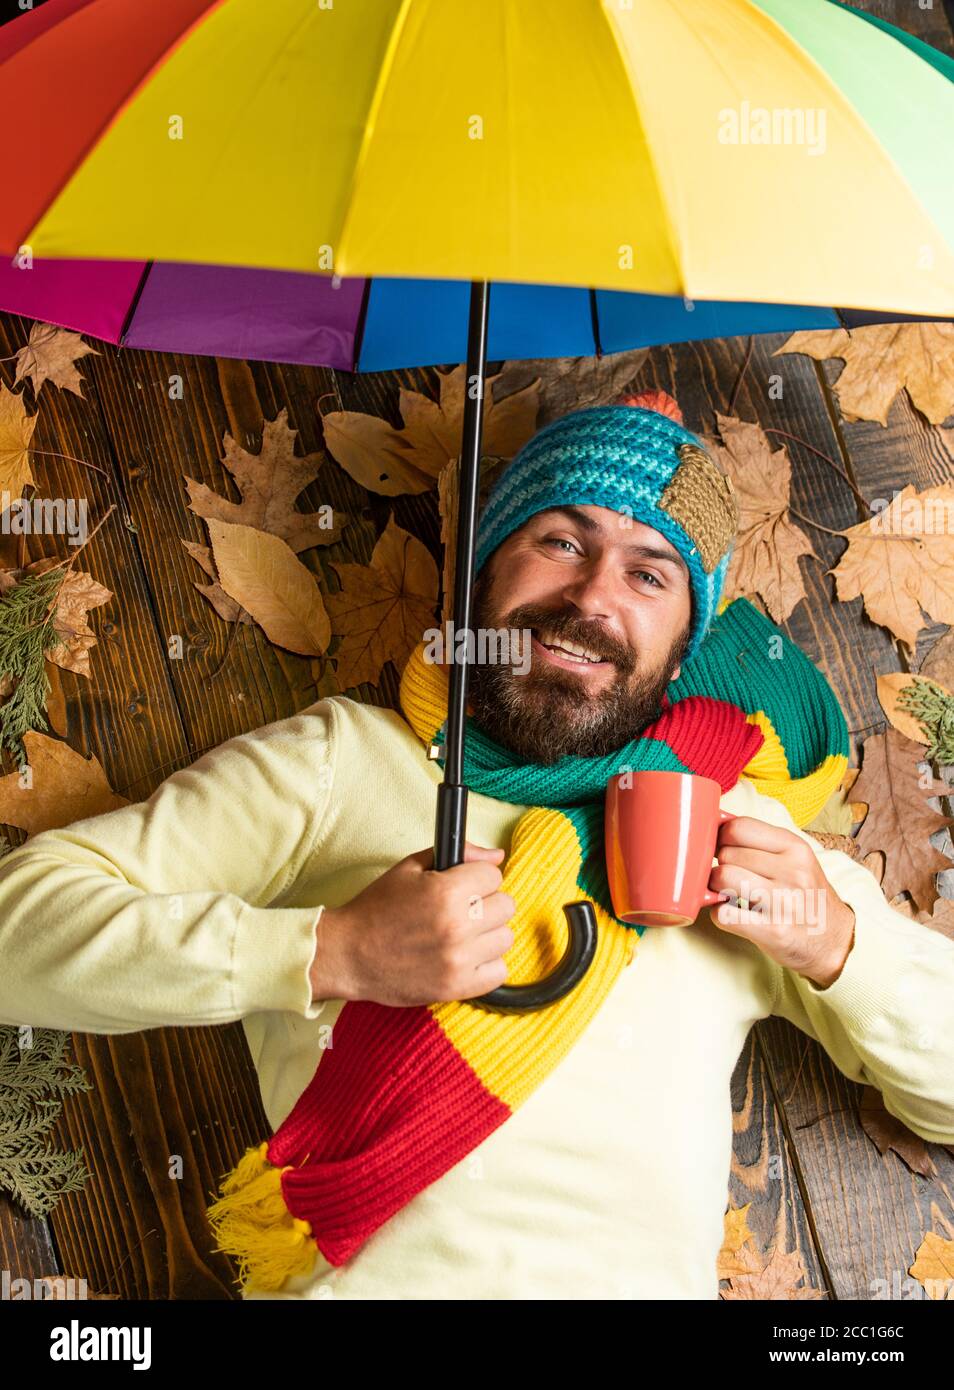 Uomo allegro che beve tè caldo o caffè. Sconti autunnali sui vestiti. Uomo  con ombrello color arcobaleno. Gli piace la pioggia, le previsioni meteo  promettono la pioggia. Uomo bearded che tiene l'ombrello